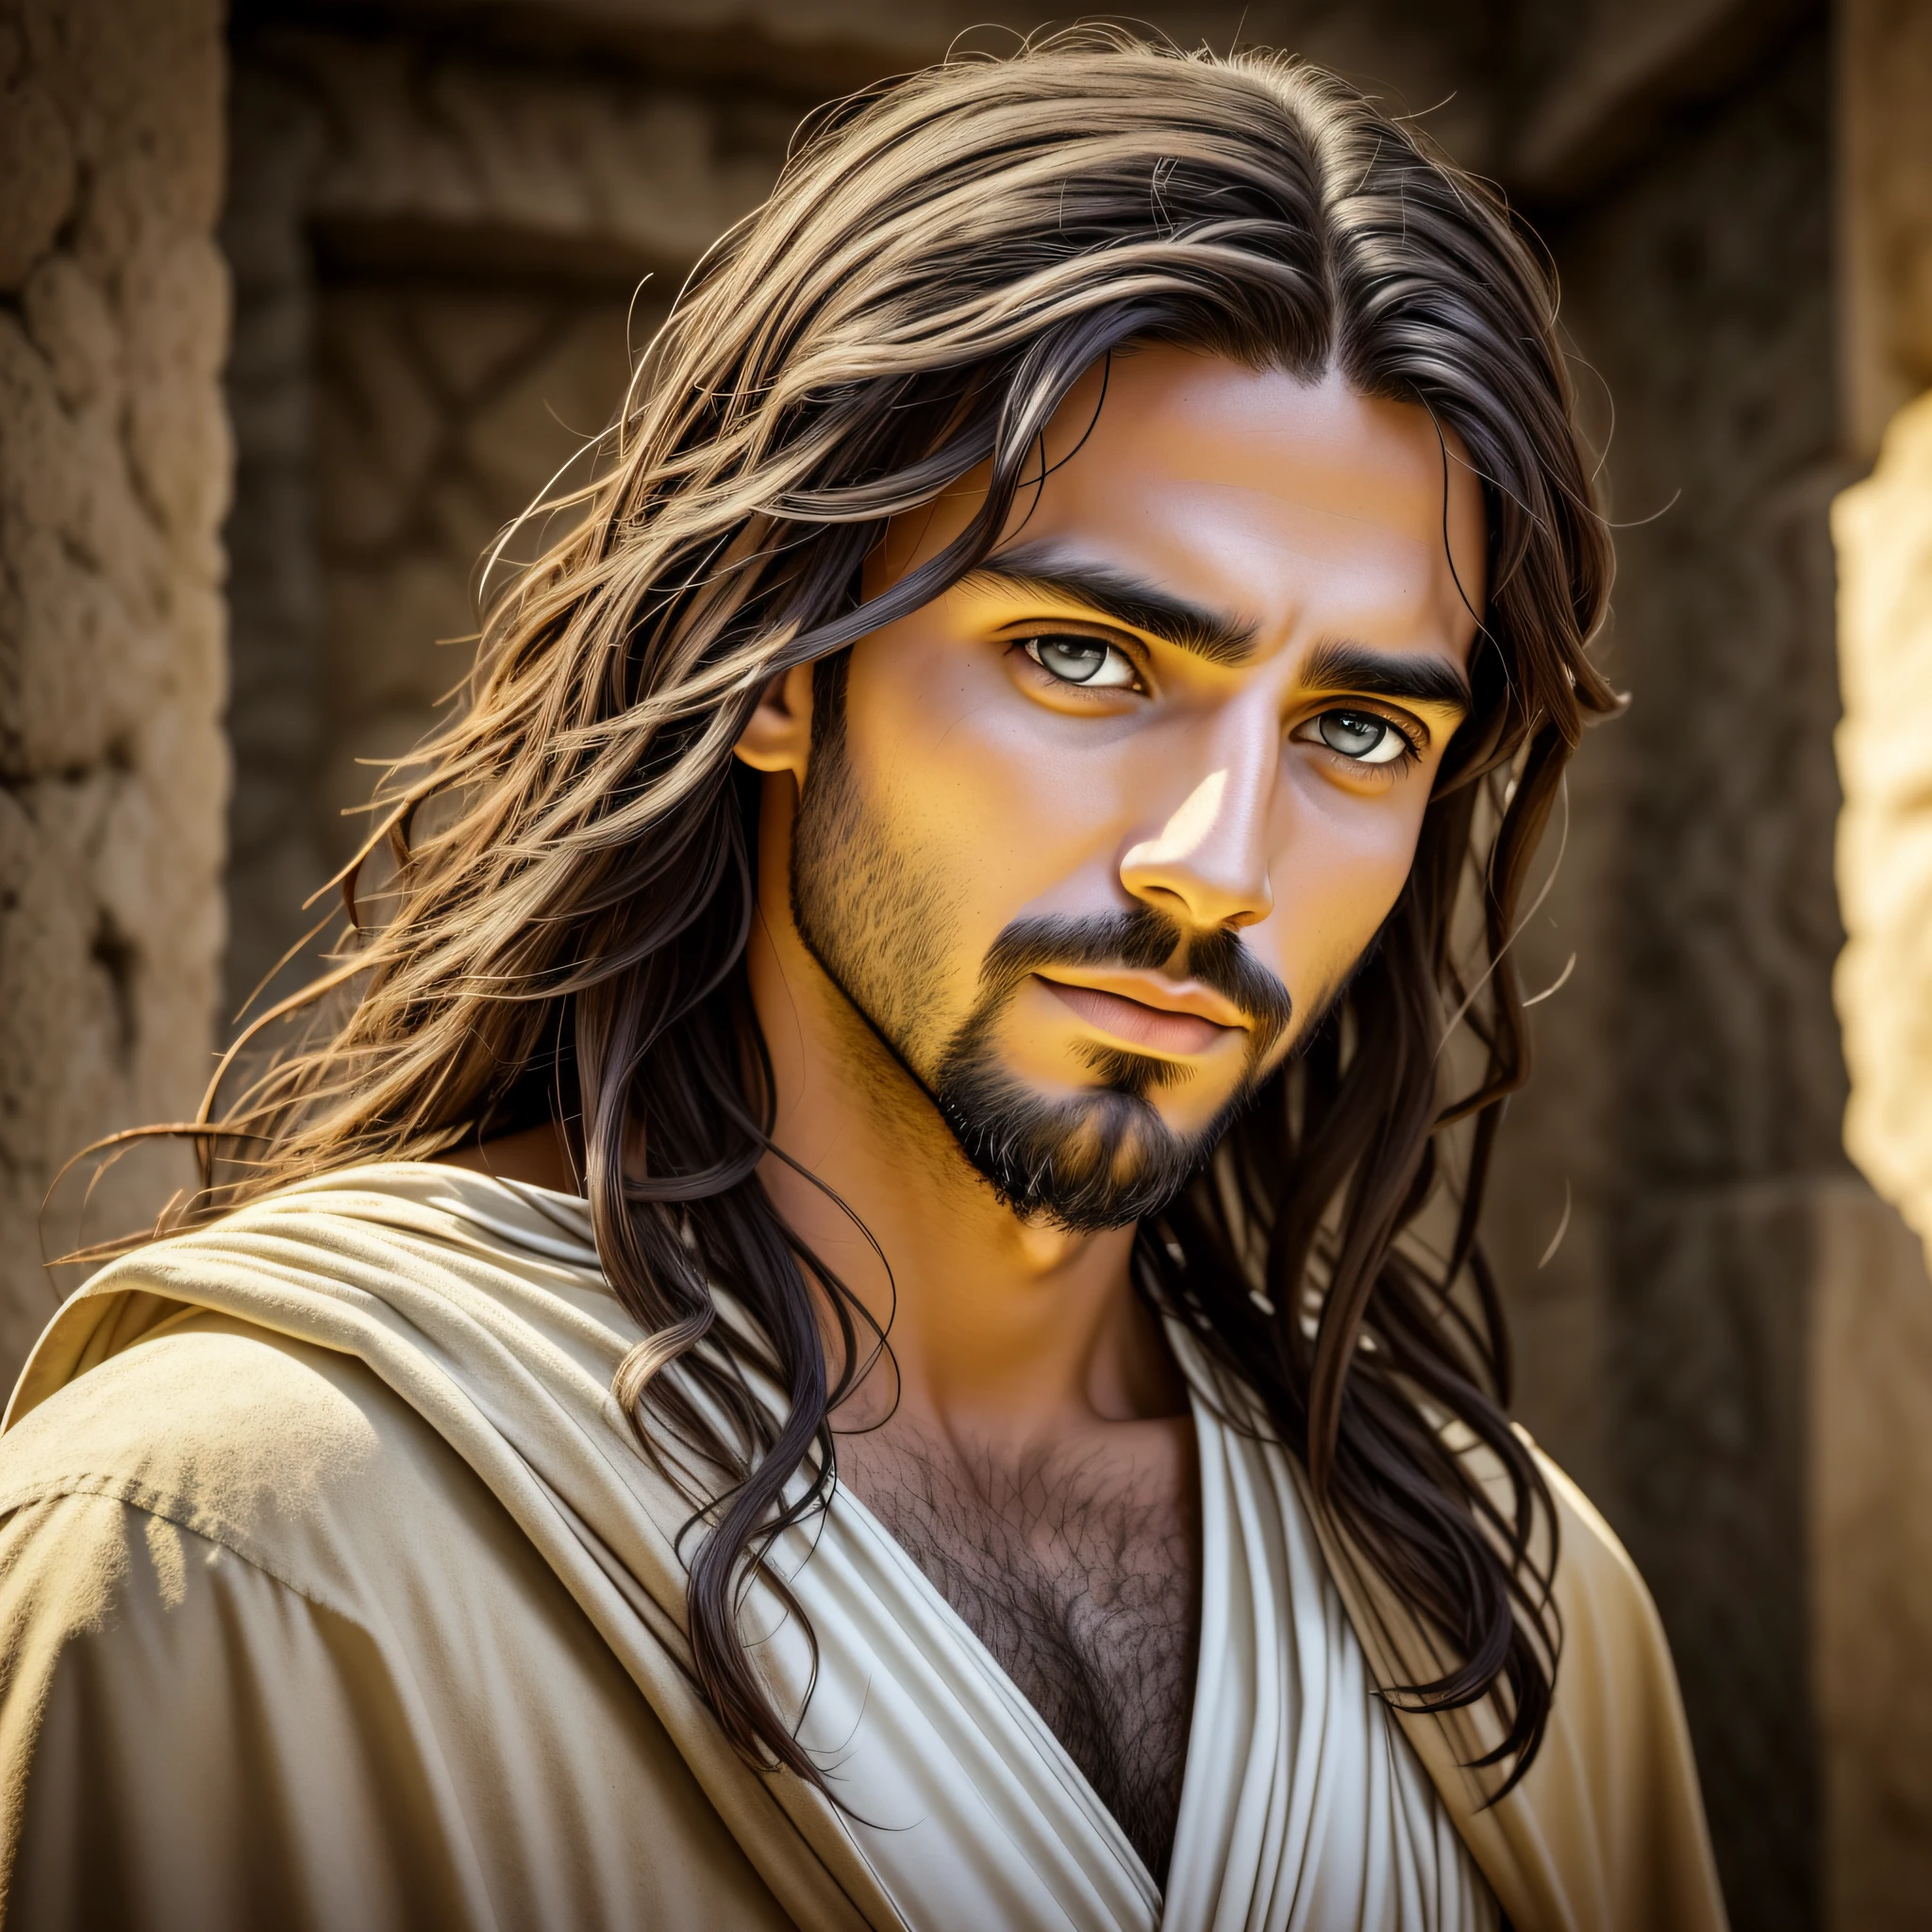 耶稣的照片, 在圣经时代耶稣, 逼真的清晰环境, 整个脸, 看着相机, 平静的眼神, 平静而慈爱的脸, 甜美的样子, 背景有灯光, 整个环境清晰, 布斯托拍摄的照片 --auto --s2